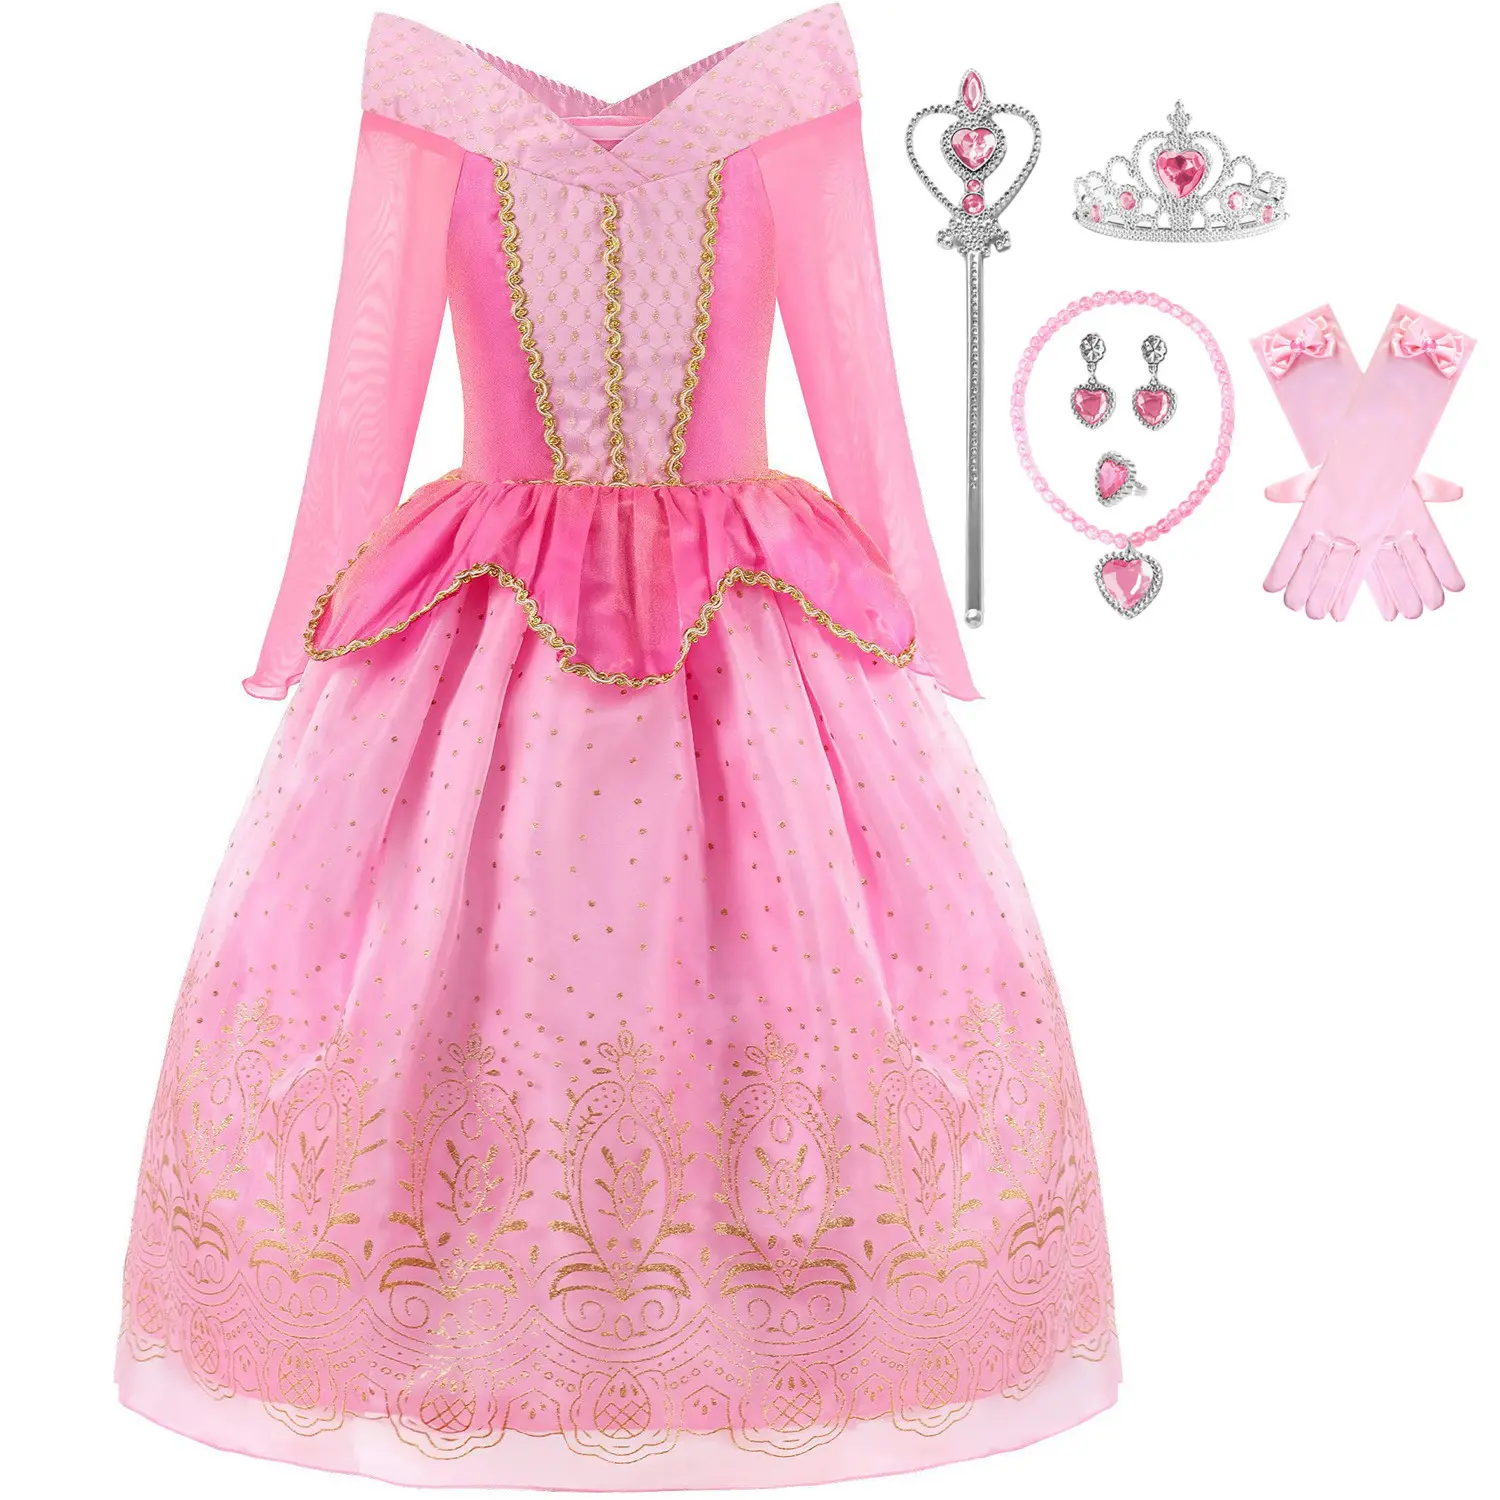 Prinzessin kleiden Fernsehfilm Kostüm Aurora-Kleid für Mädchen Halloween Cosplay Weihnachten Geburtstag Party-Kleid